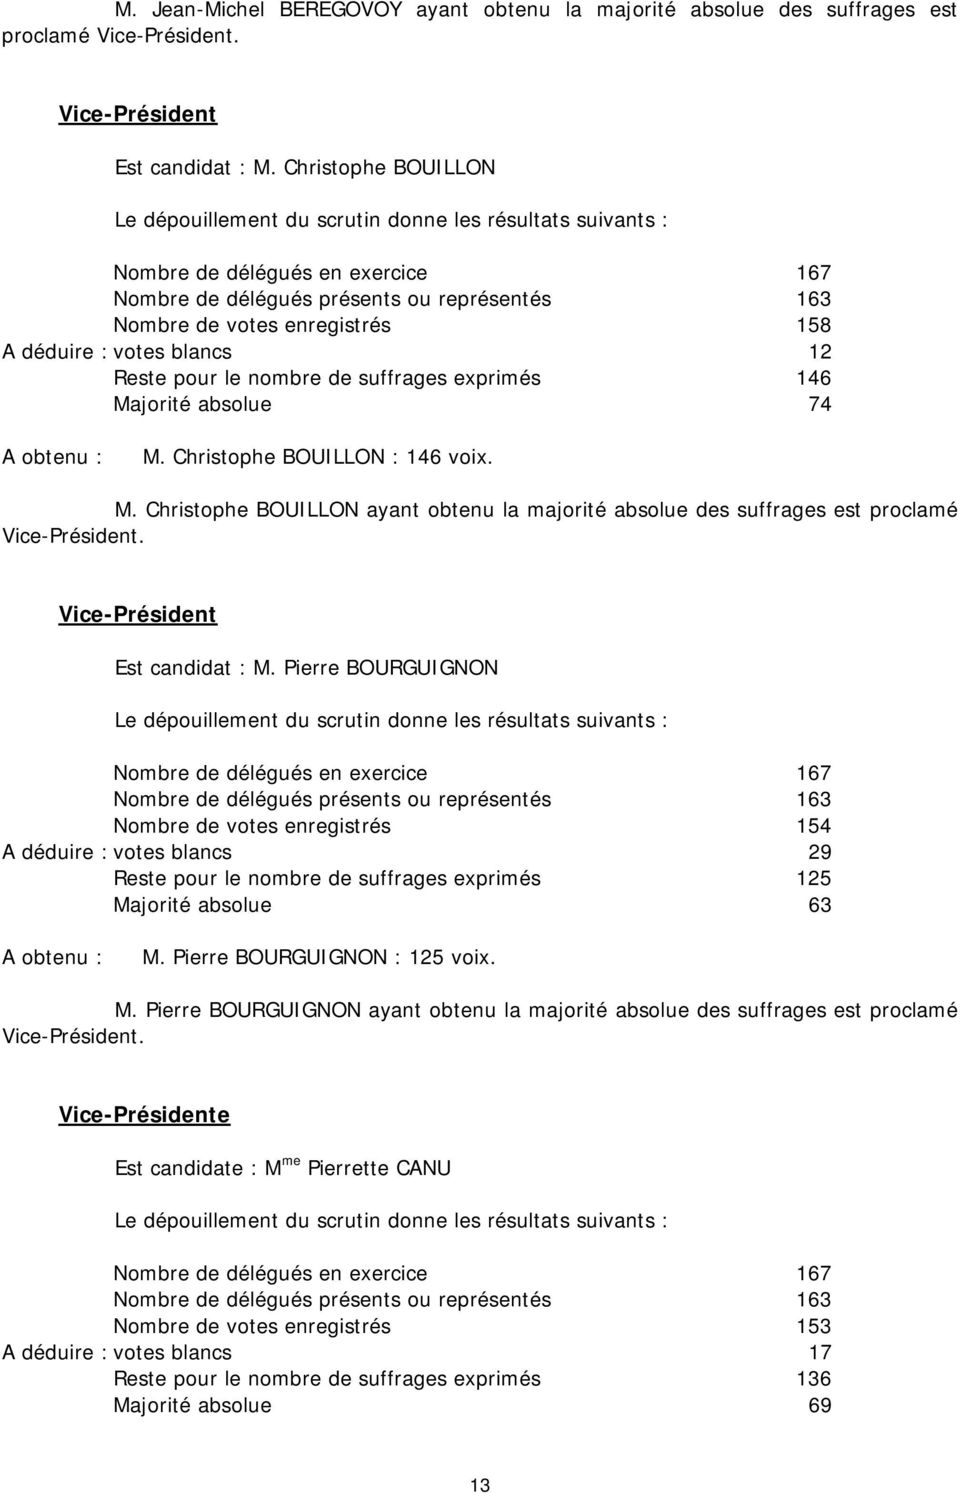 jorité absolue 74 M. Christophe BOUILLON : 146 voix. M. Christophe BOUILLON ayant obtenu la majorité absolue des suffrages est proclamé Est candidat : M.